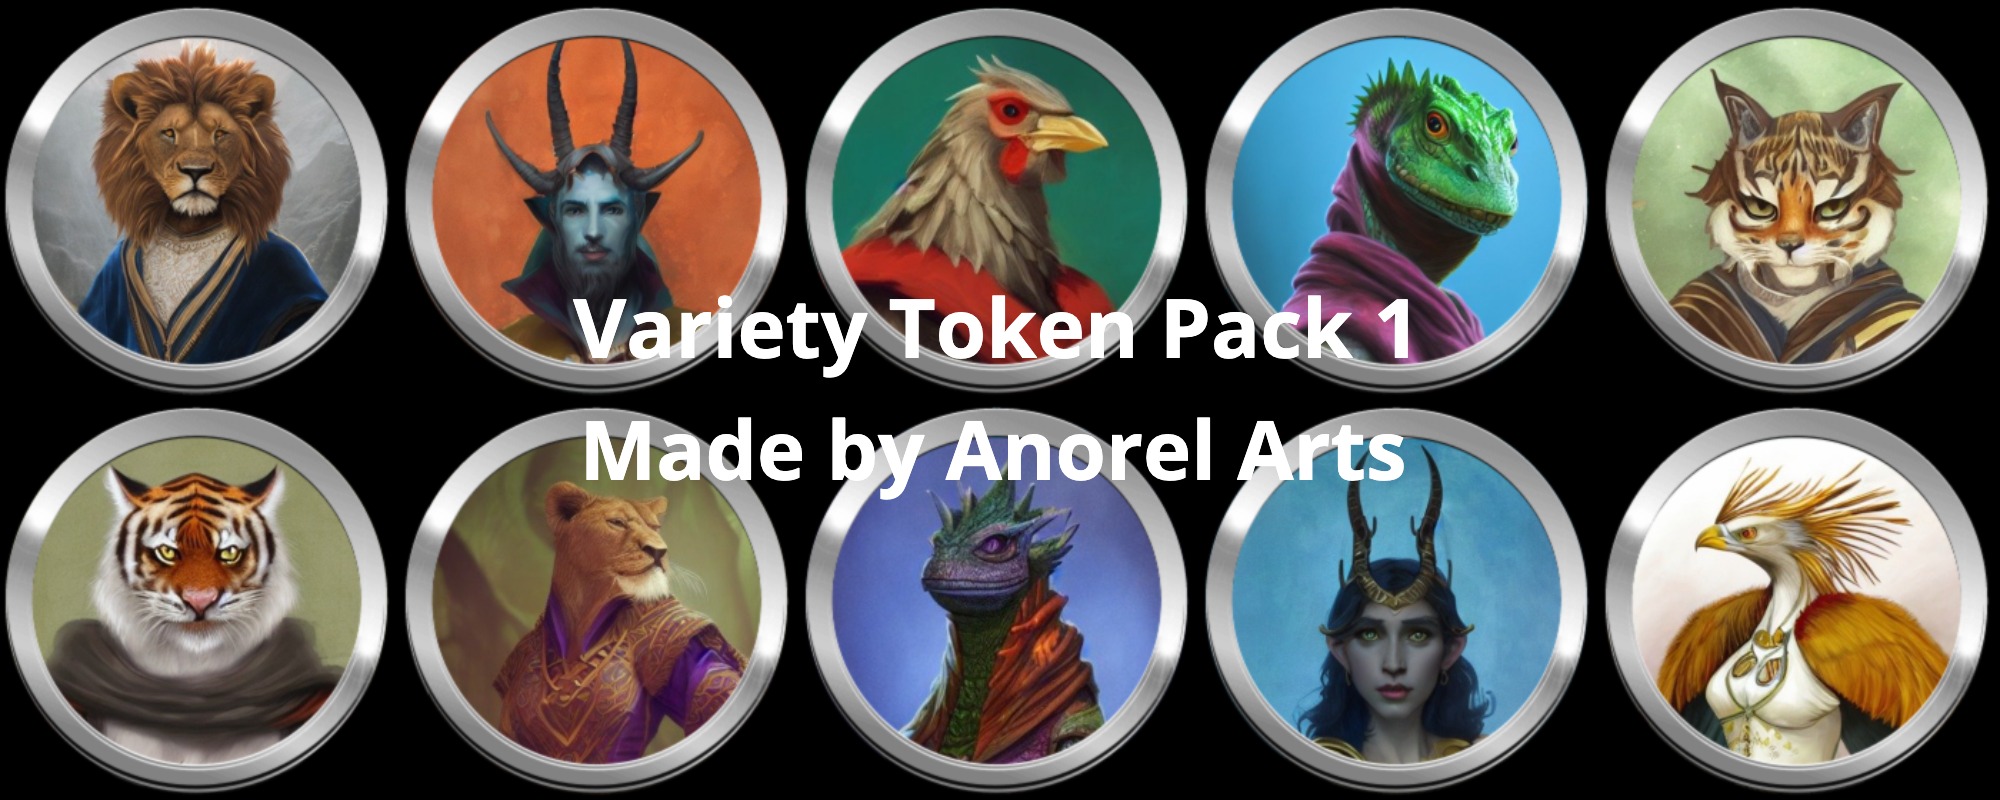 D&D Variety Token Pack 1